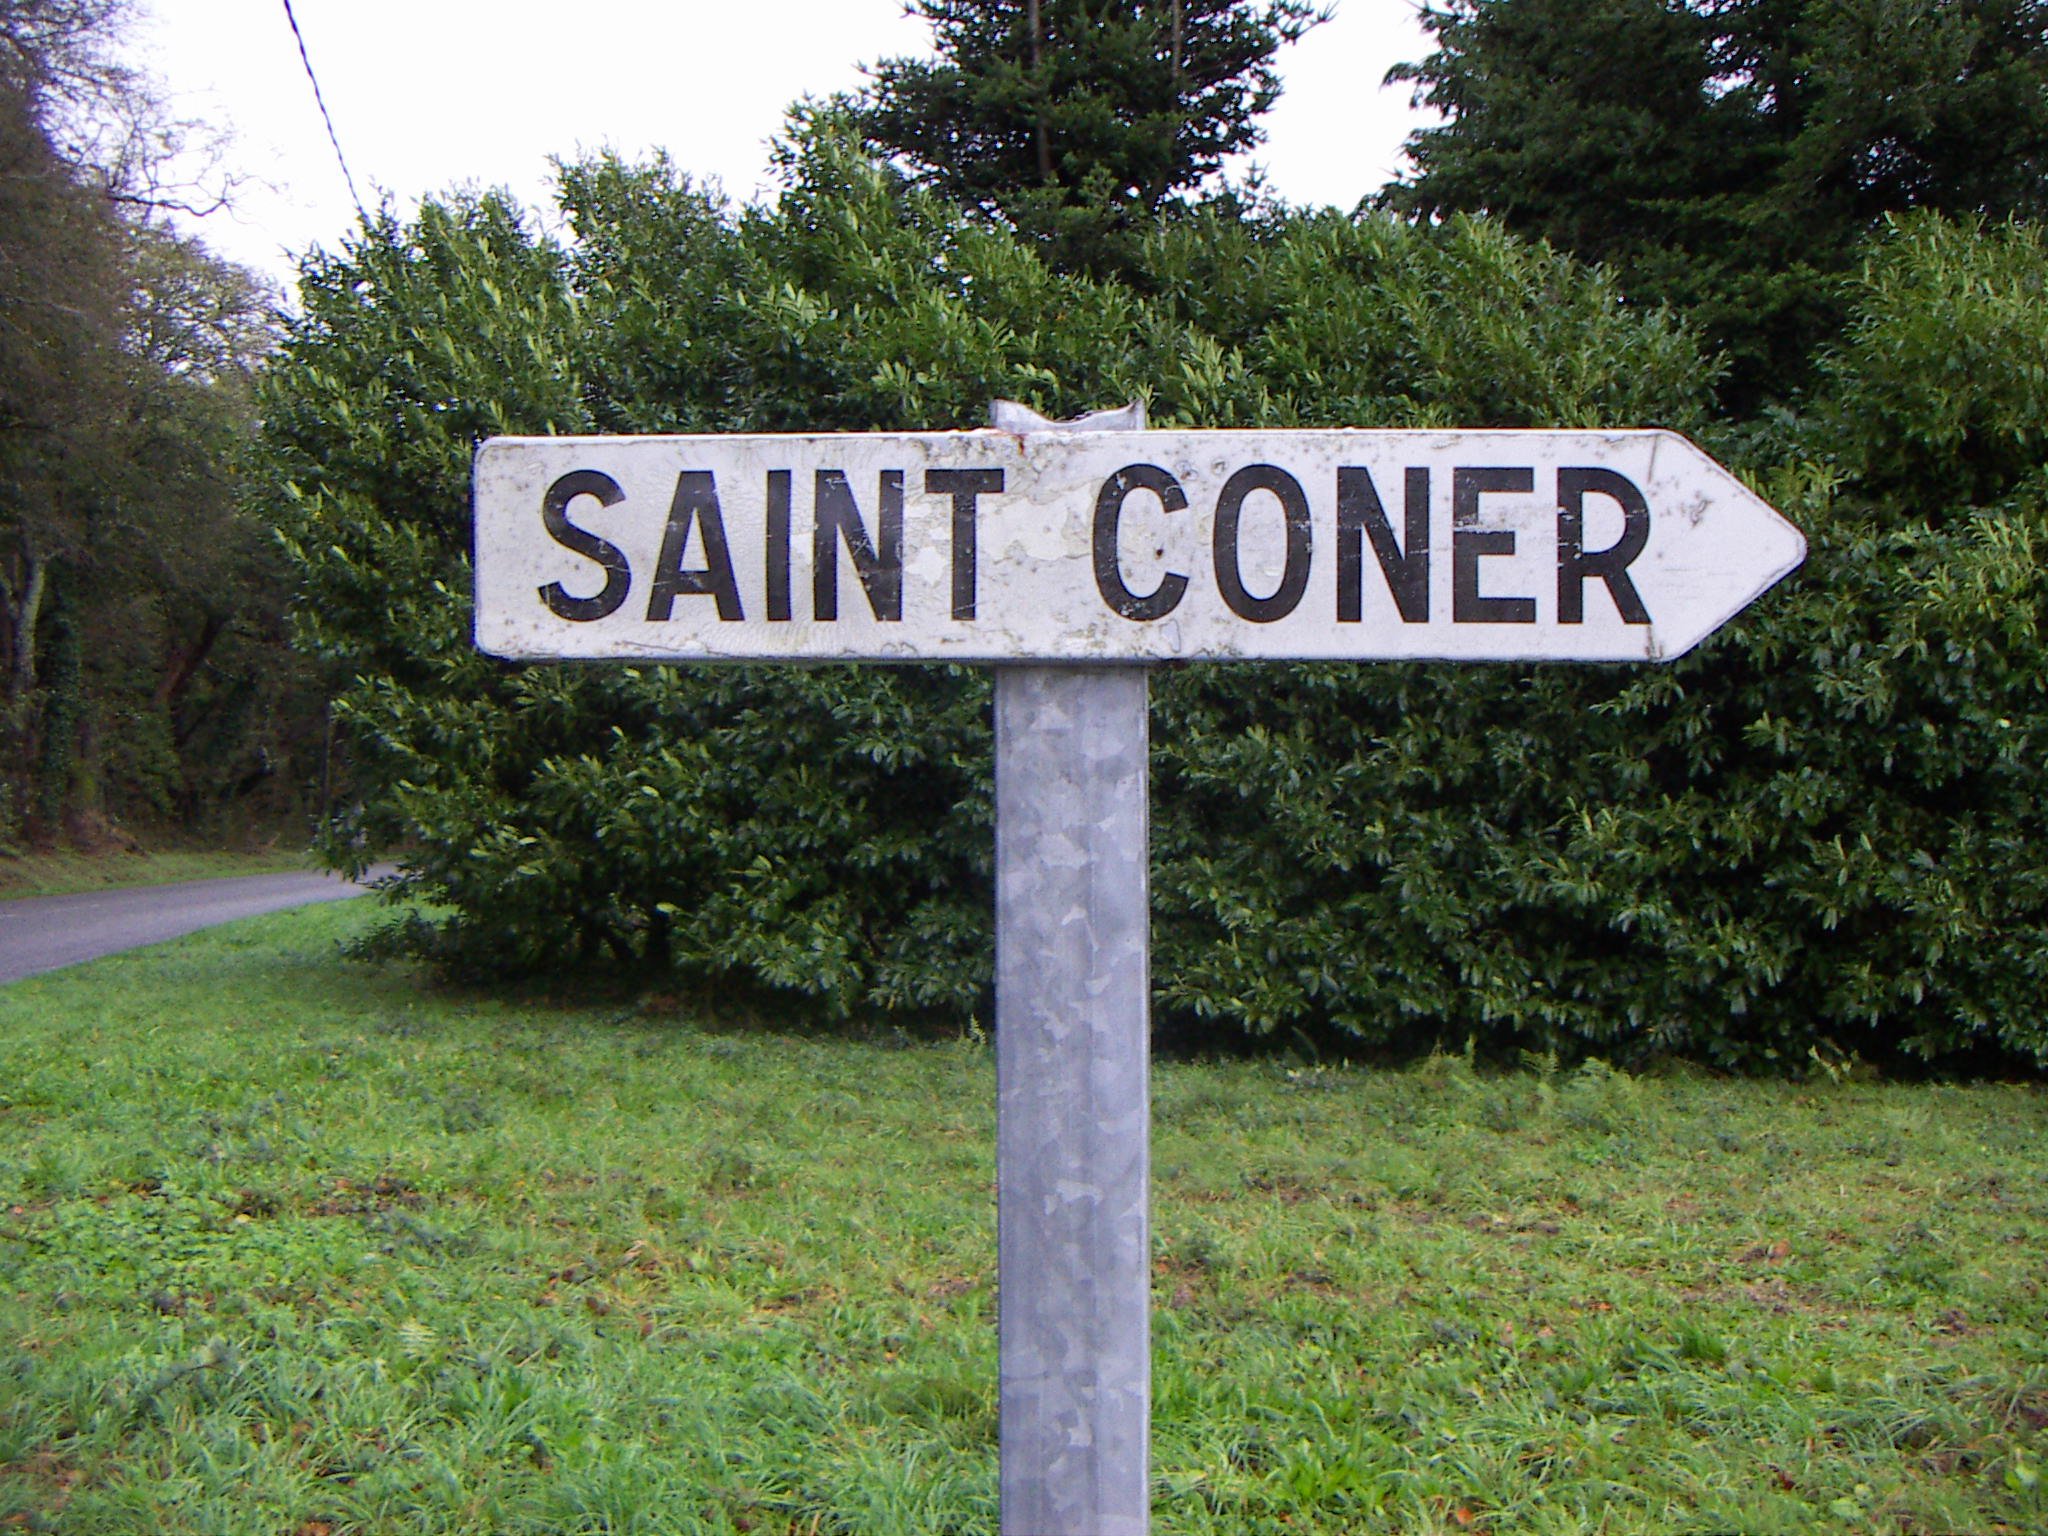 Panneau directionnel vers Saint Coner